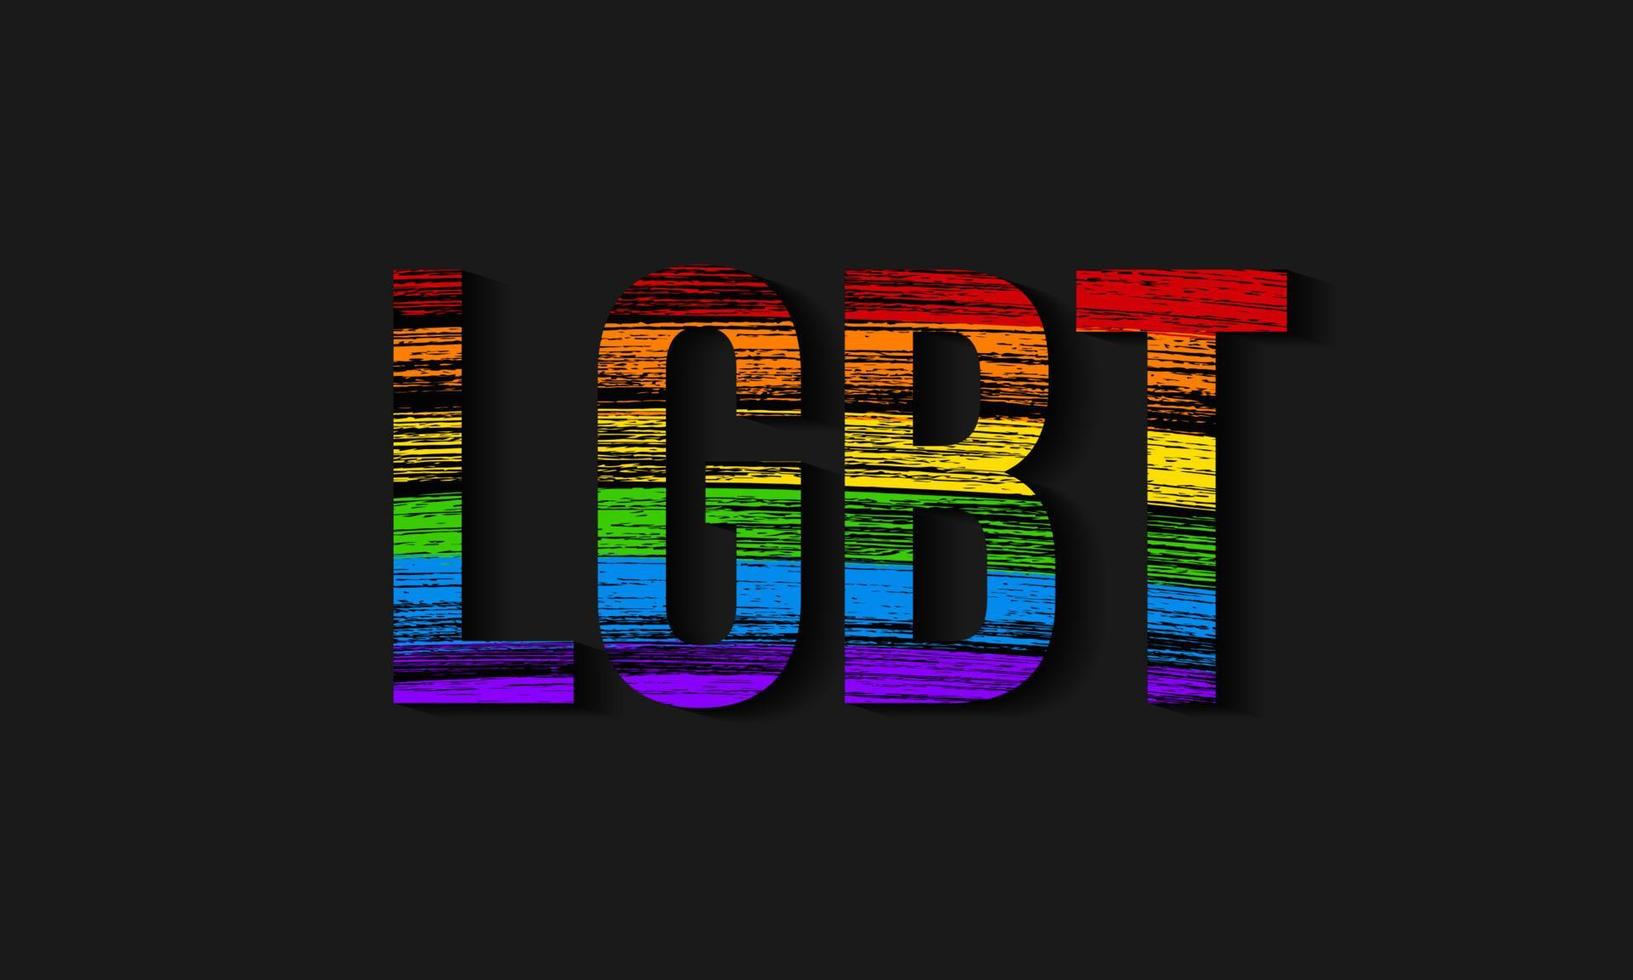 symbole des mouvements sociaux lesbiens, gay pride, bisexuels, transgenres. drapeau de la communauté lgbt. les traits de crayon texturent les couleurs de l'arc-en-ciel. modèle de conception vectorielle facile à modifier. vecteur